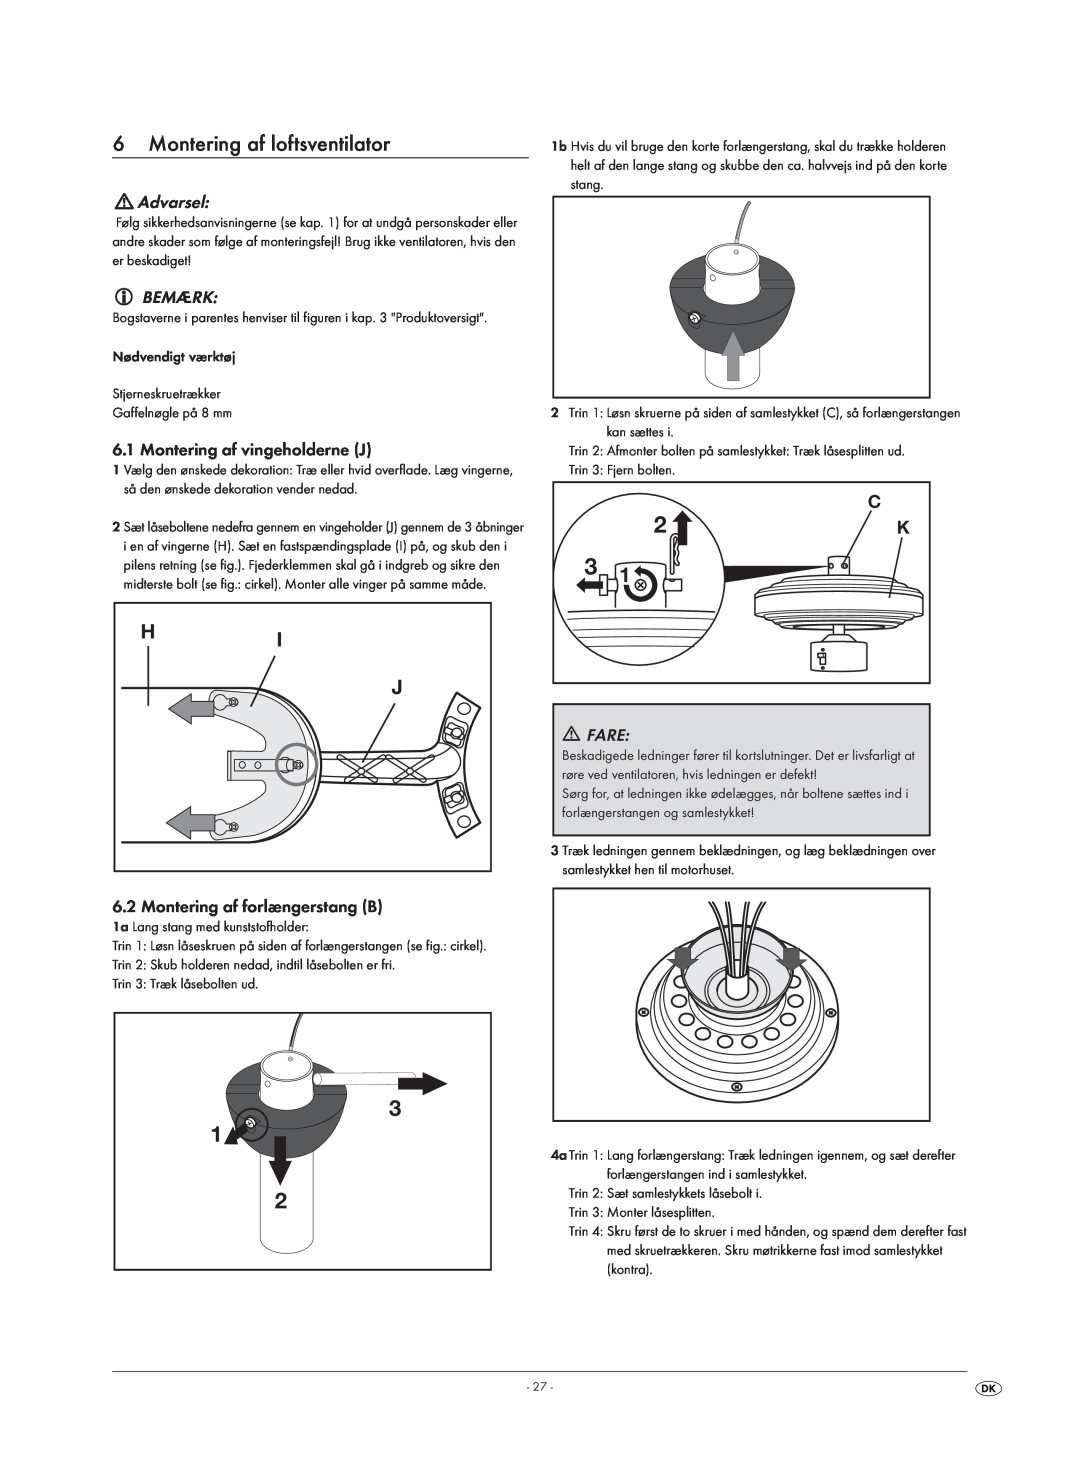 Kompernass KH 1150 manual 6Montering af loftsventilator, Advarsel, Bemærk, Montering af vingeholderne J, Fare 